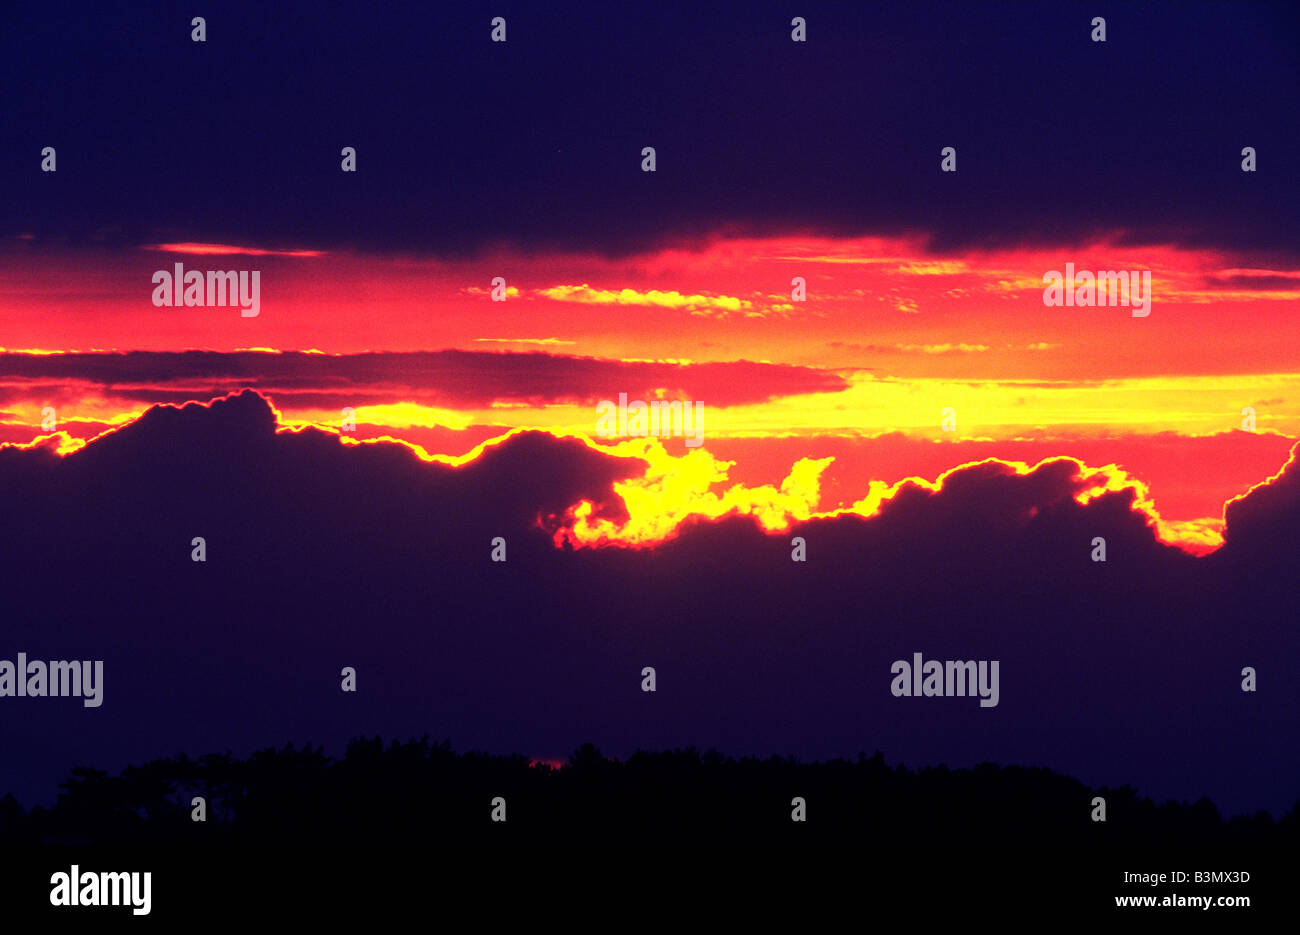 Nuages ciel coucher soleil rouge hiver arbres silhouette de prévisions météorologiques skyline bergers delight Banque D'Images